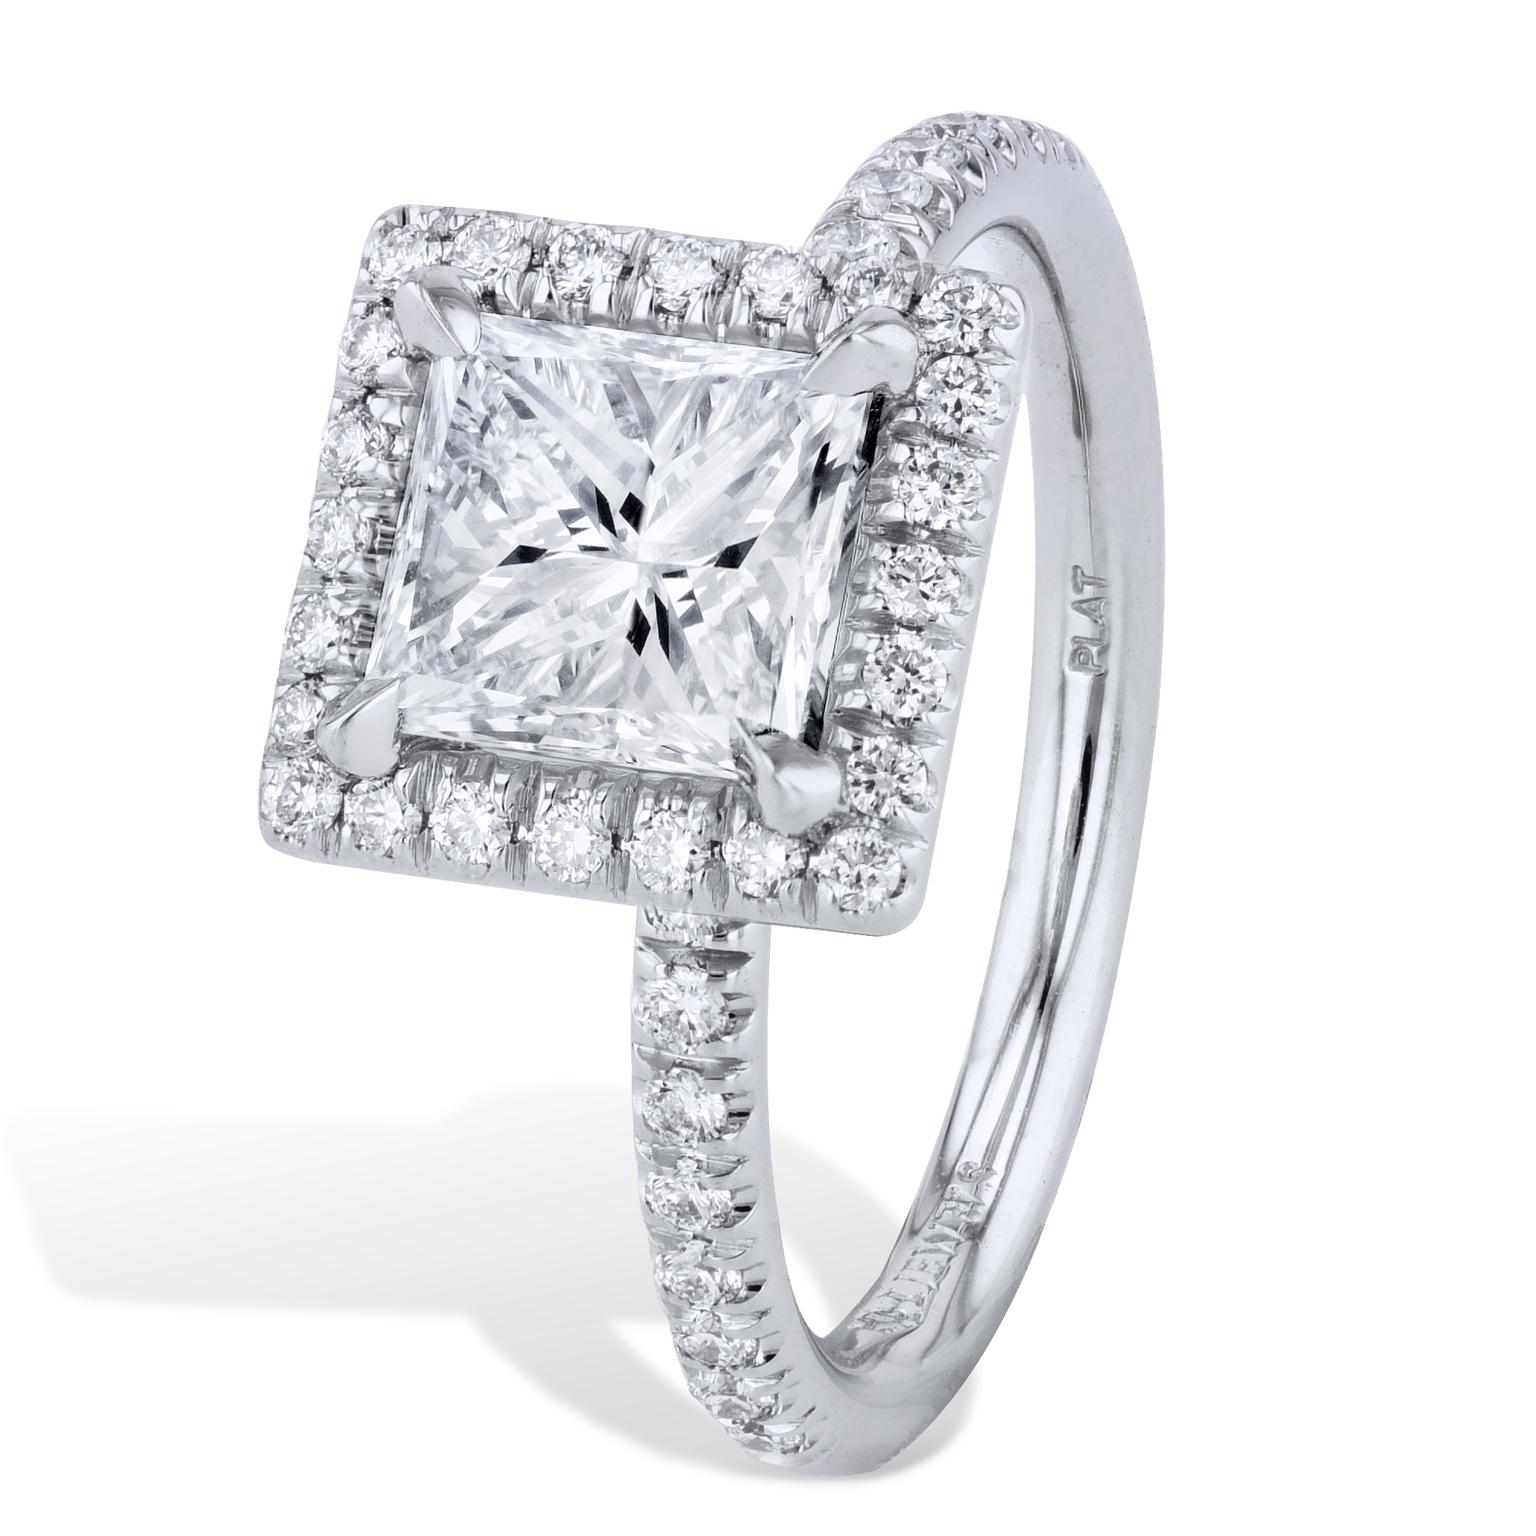 GIA-zertifizierter 1,56-Karat-Diamant im Prinzessinnenschliff mit einem Pave Halo-Verlobungsring

Fühlen Sie sich wie eine Prinzessin mit diesem 1,56-Karat-Diamantring im Prinzessinnenschliff (H - VVS2, VG VG) mit einem Gesamtgewicht von 0,32 Karat